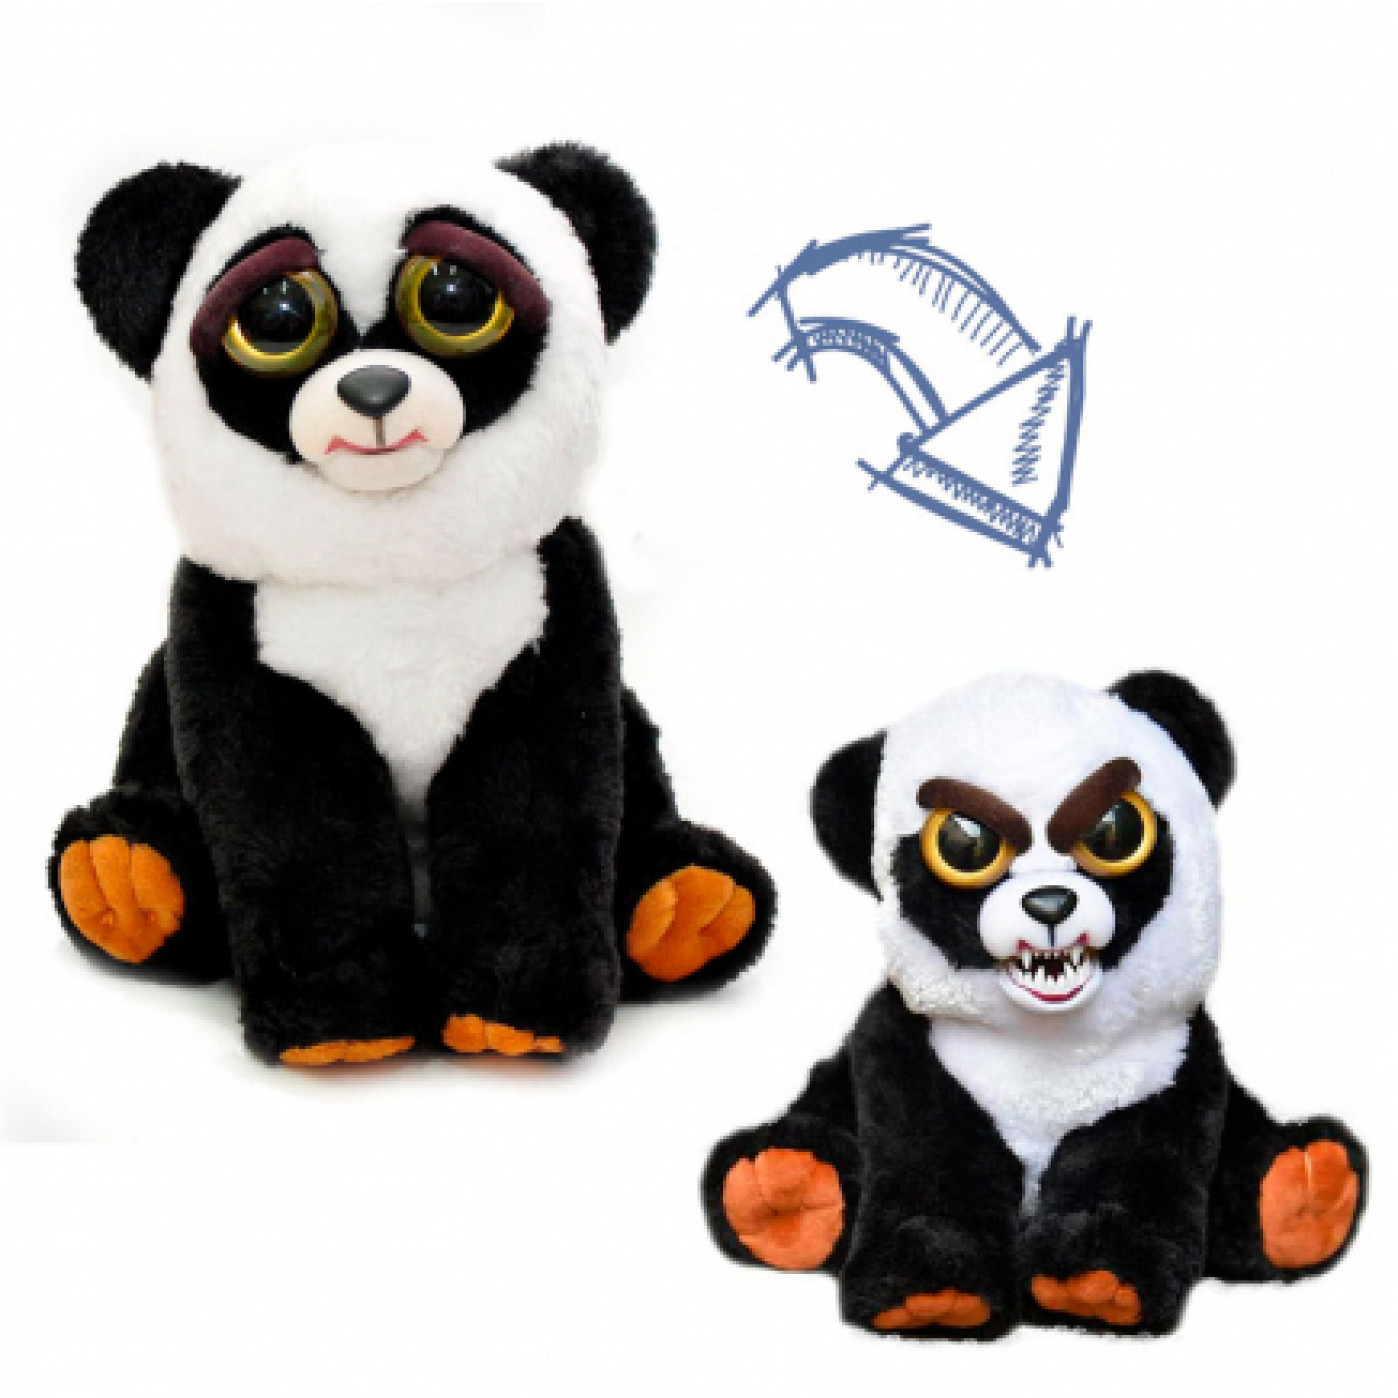 Мягкая игрушка My Angry Pet Безумная панда